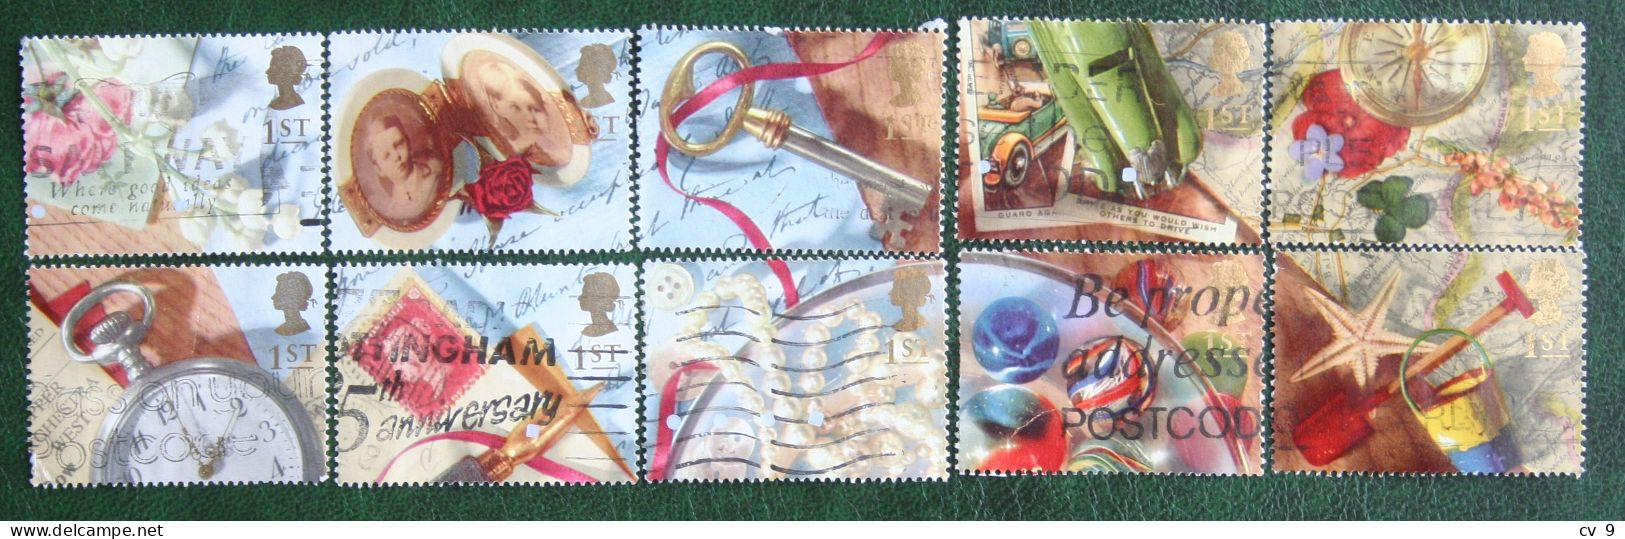 Greetings Booklet Stamps Memories (Mi 1377-1386) 1992 Used Gebruikt Oblitere ENGLAND GRANDE-BRETAGNE GB GREAT BRITAIN - Gebruikt